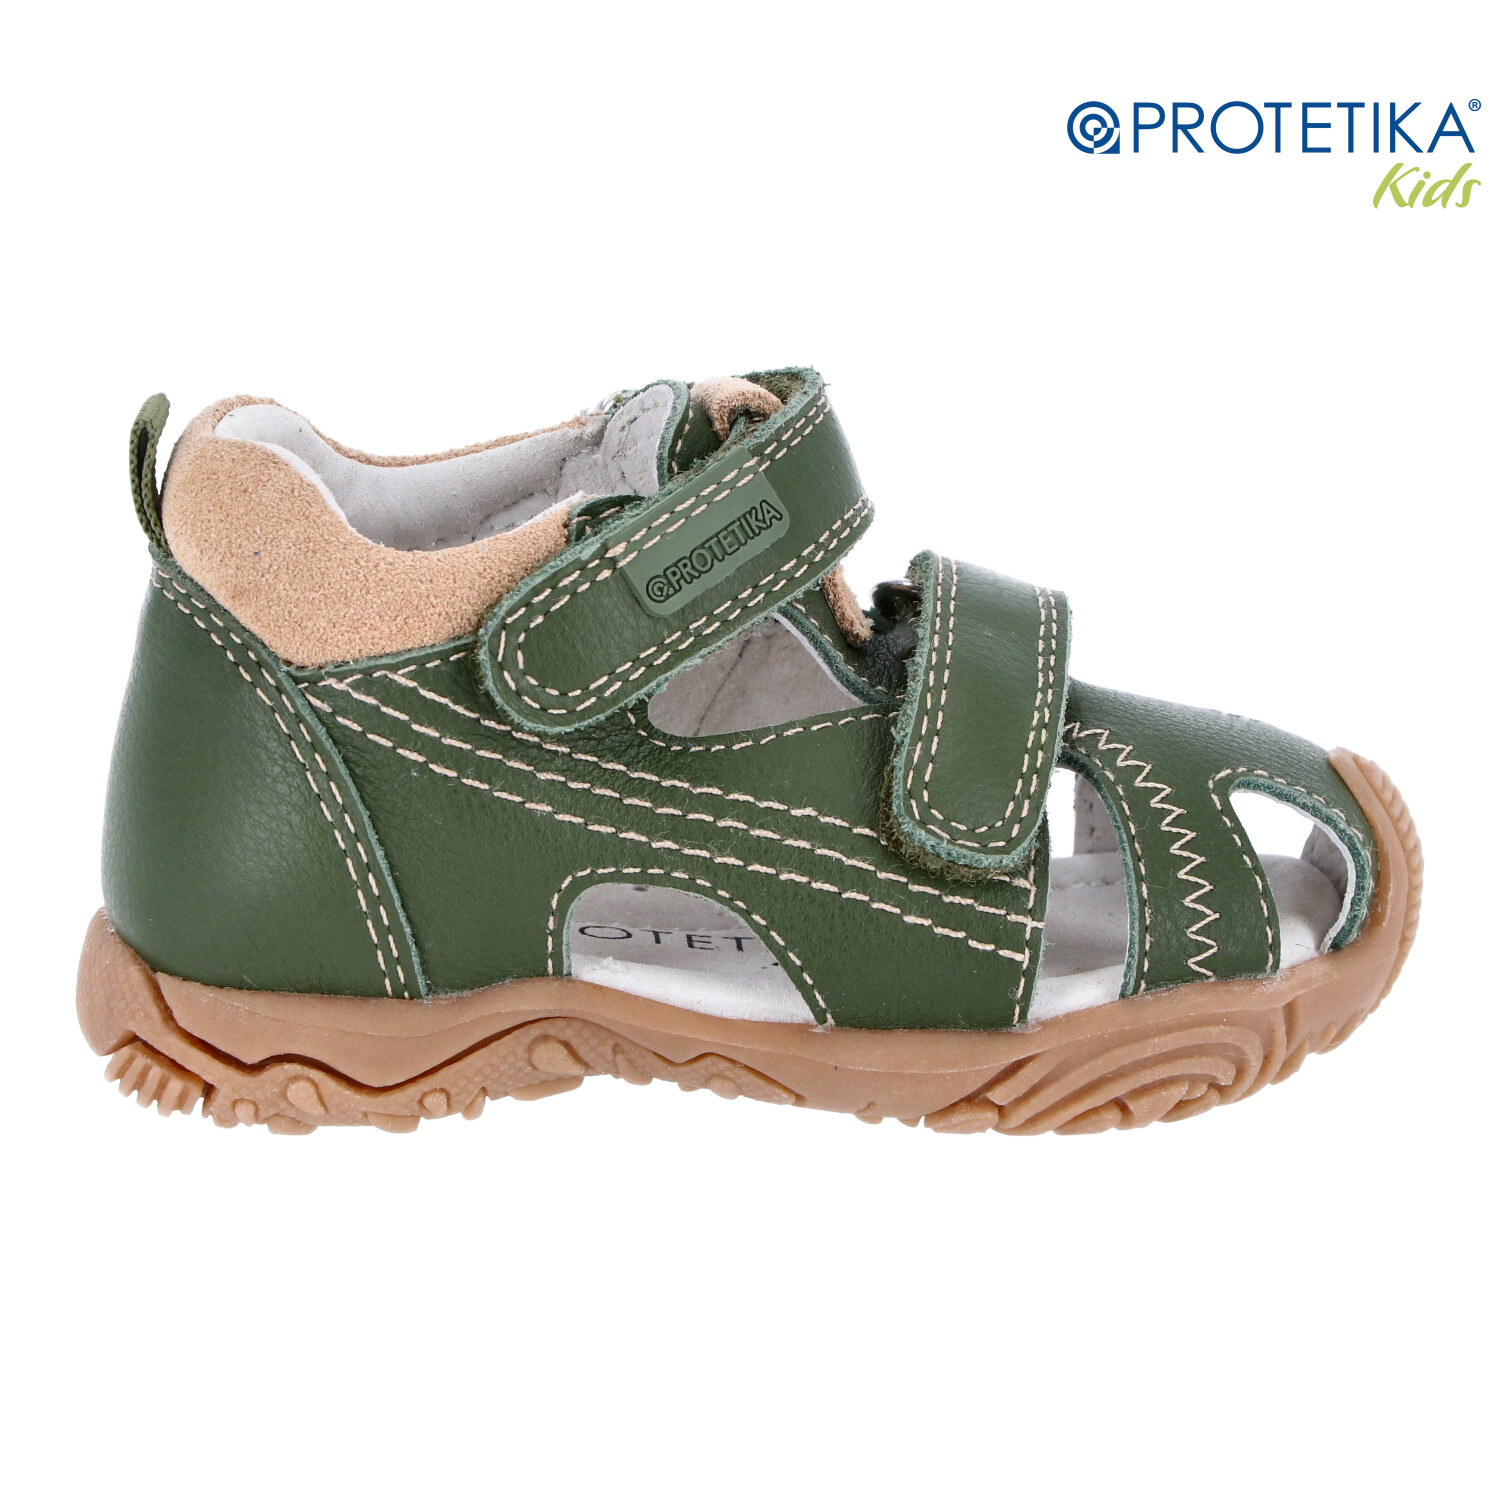 Protetika - sandále MARTY green